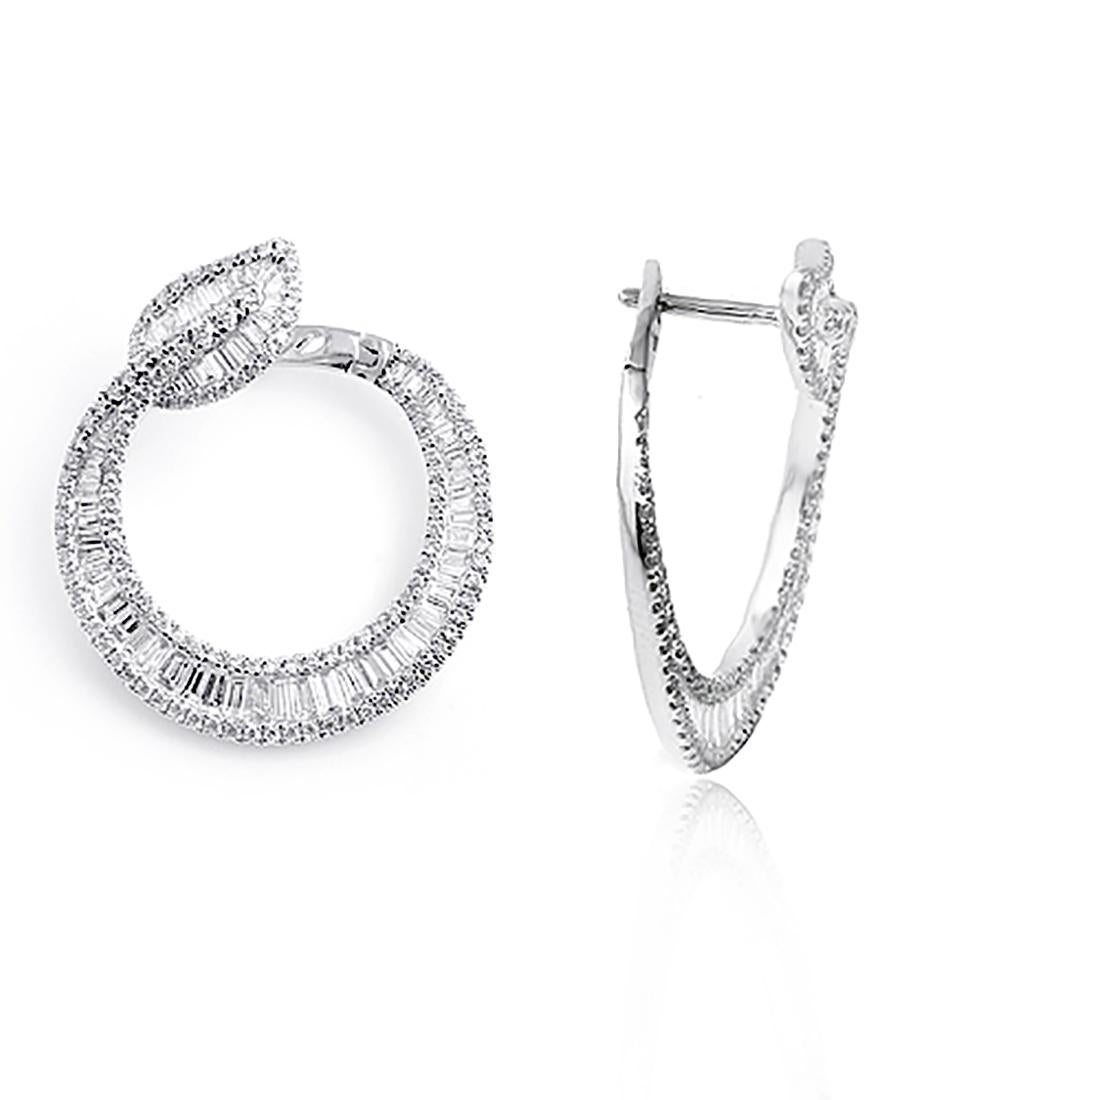 diamond earrings hoops white gold